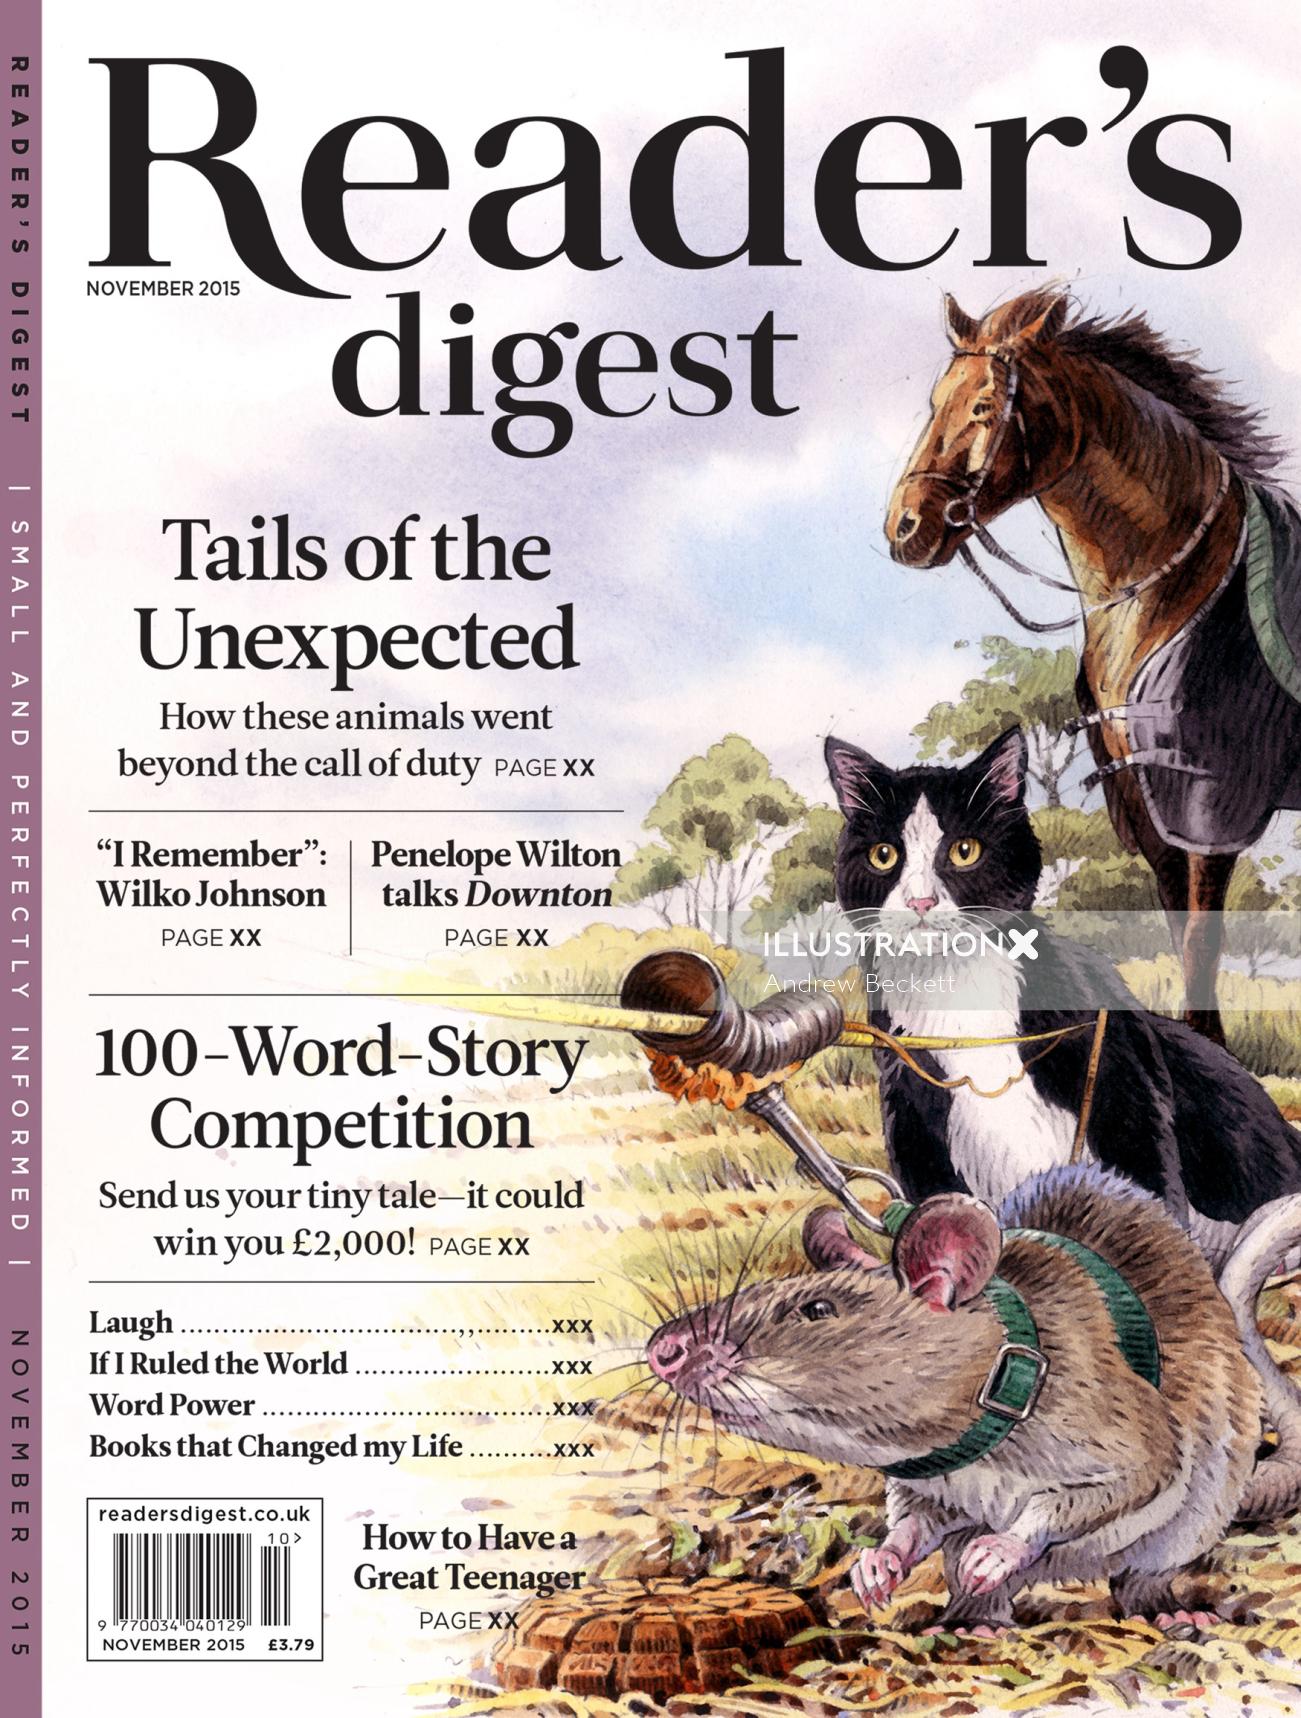 An illustration for Reader's Digest - Tails